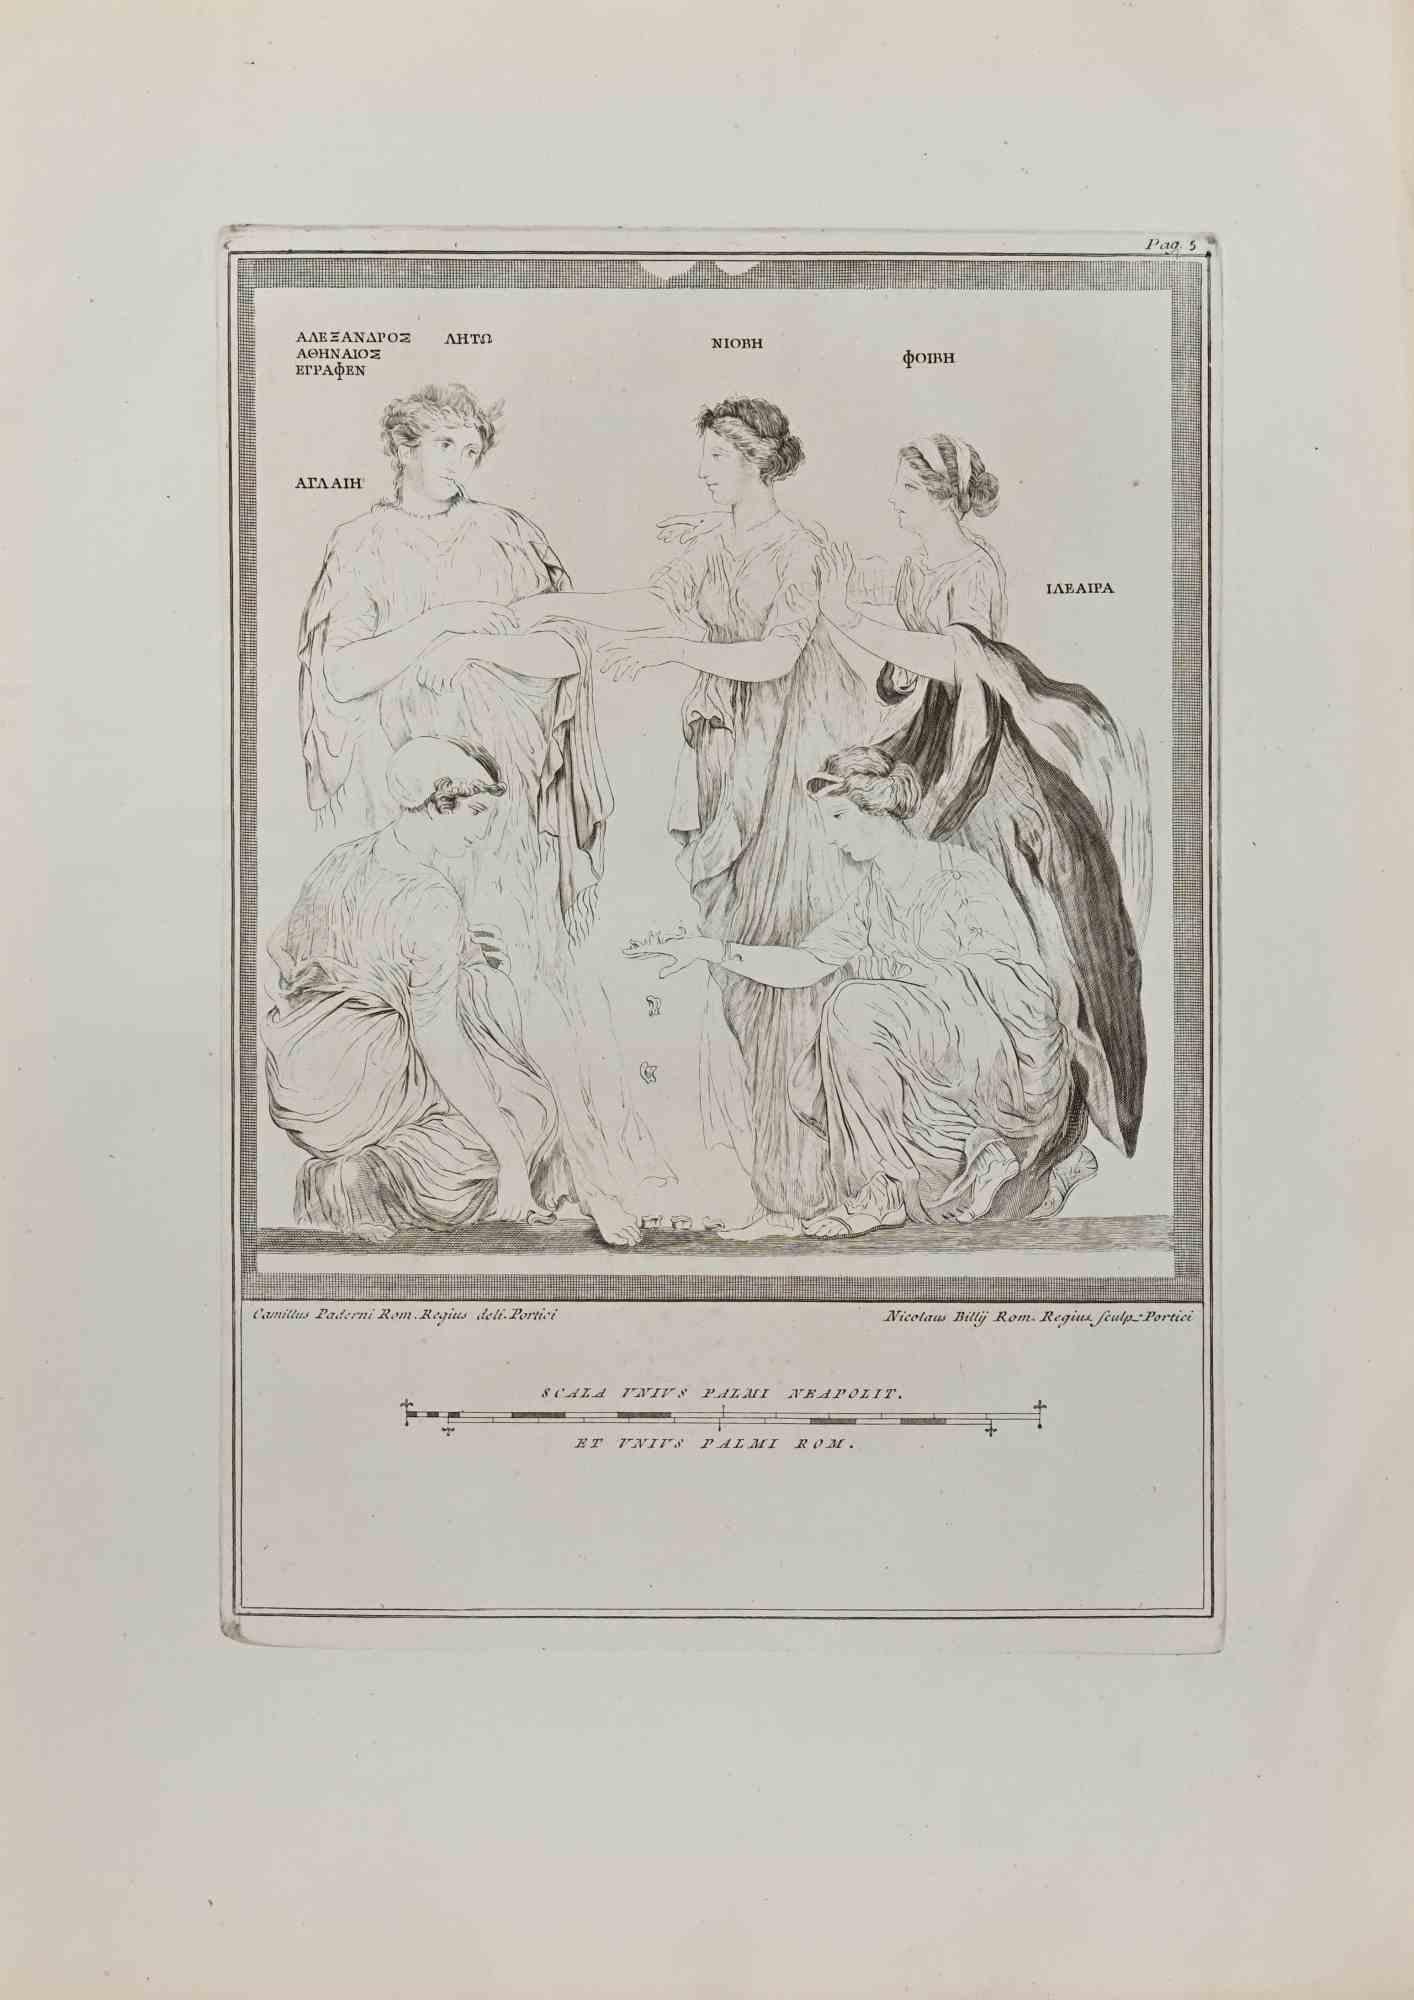 Groupe de joueurs d'Astragalos des "Antiquités d'Herculanum" est une gravure sur papier réalisée par Nicola Billy d'après Camillus Paderni au 18ème siècle.

Signé sur la plaque.

Bonnes conditions et marges vieillies avec quelques pliages et